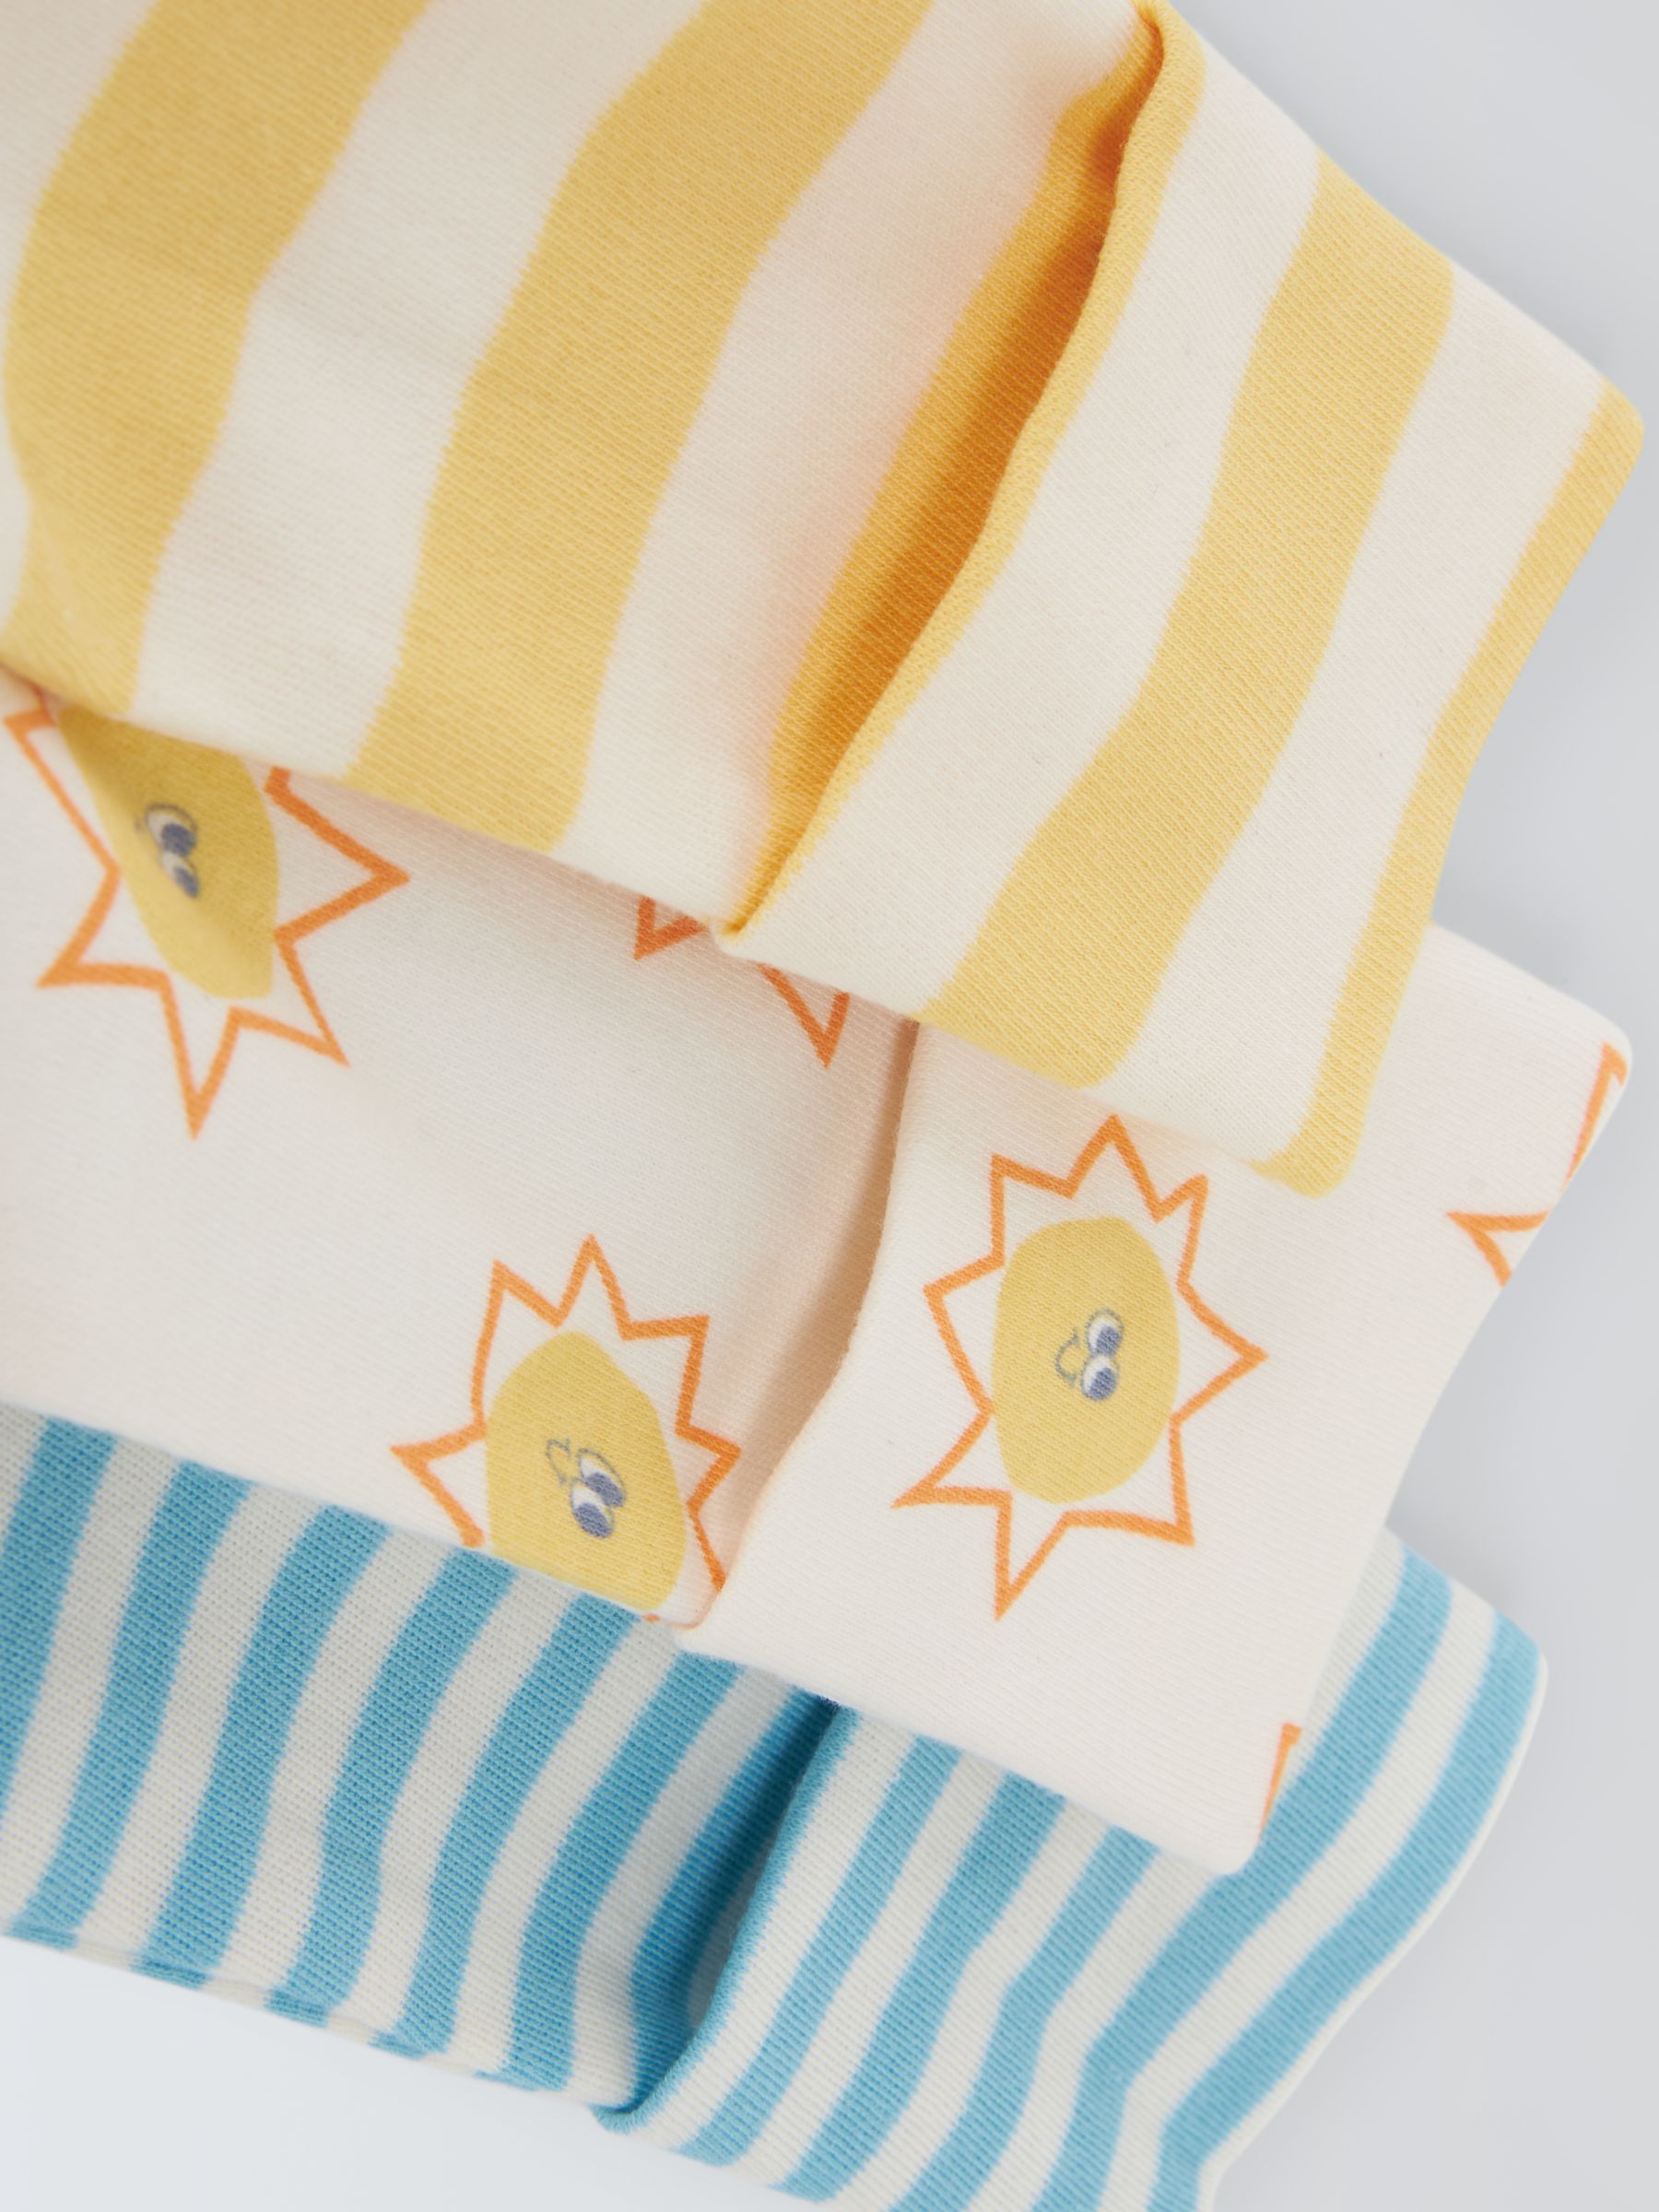 Buy John Lewis ANYDAY Baby Printed Sleepsuit, Pack of 3, Multi Online at johnlewis.com